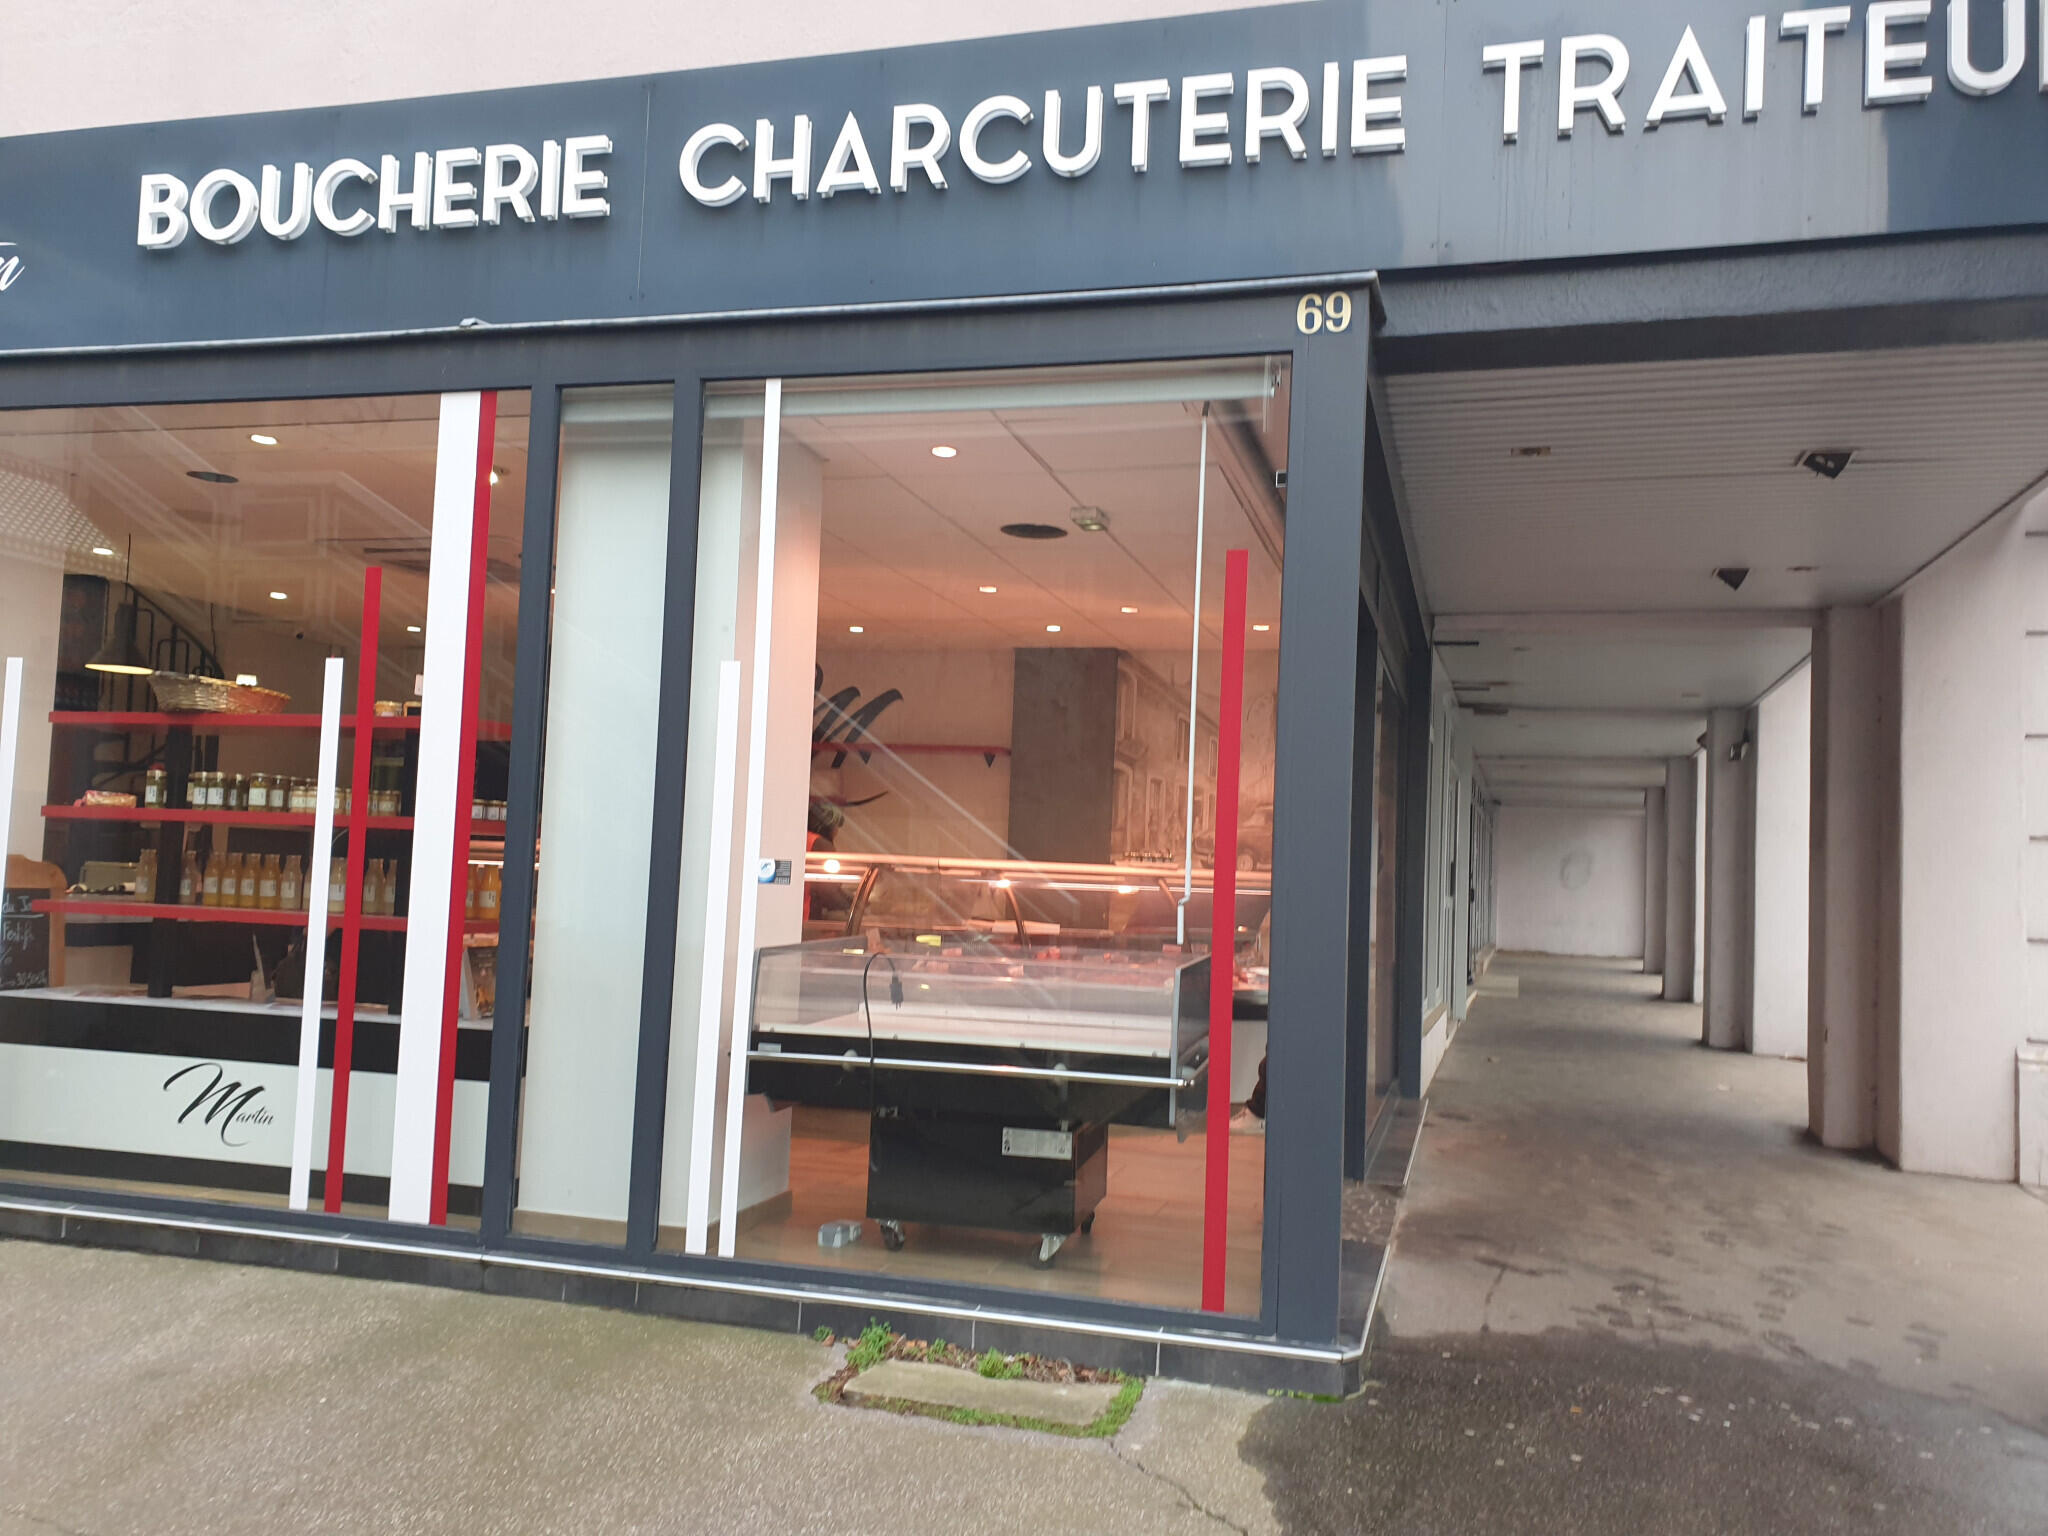 Vente boucherie charcuterie traiteur en Loire